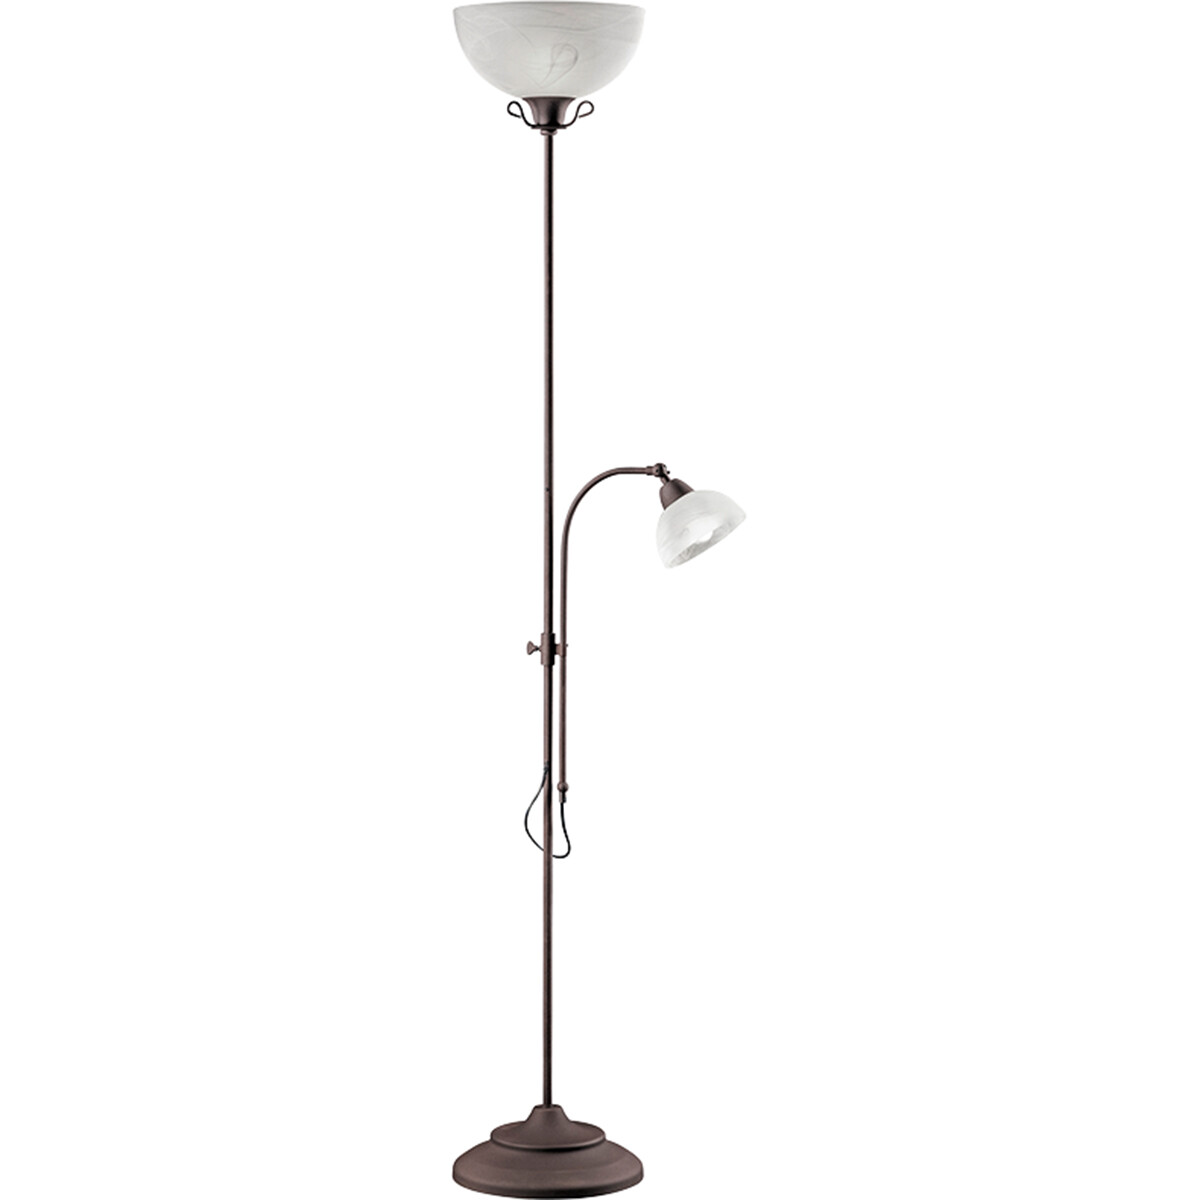 LED Vloerlamp - Trion Kantra - E27/E14 Fitting - Dimbaar - Rond - Roestkleur - Aluminium